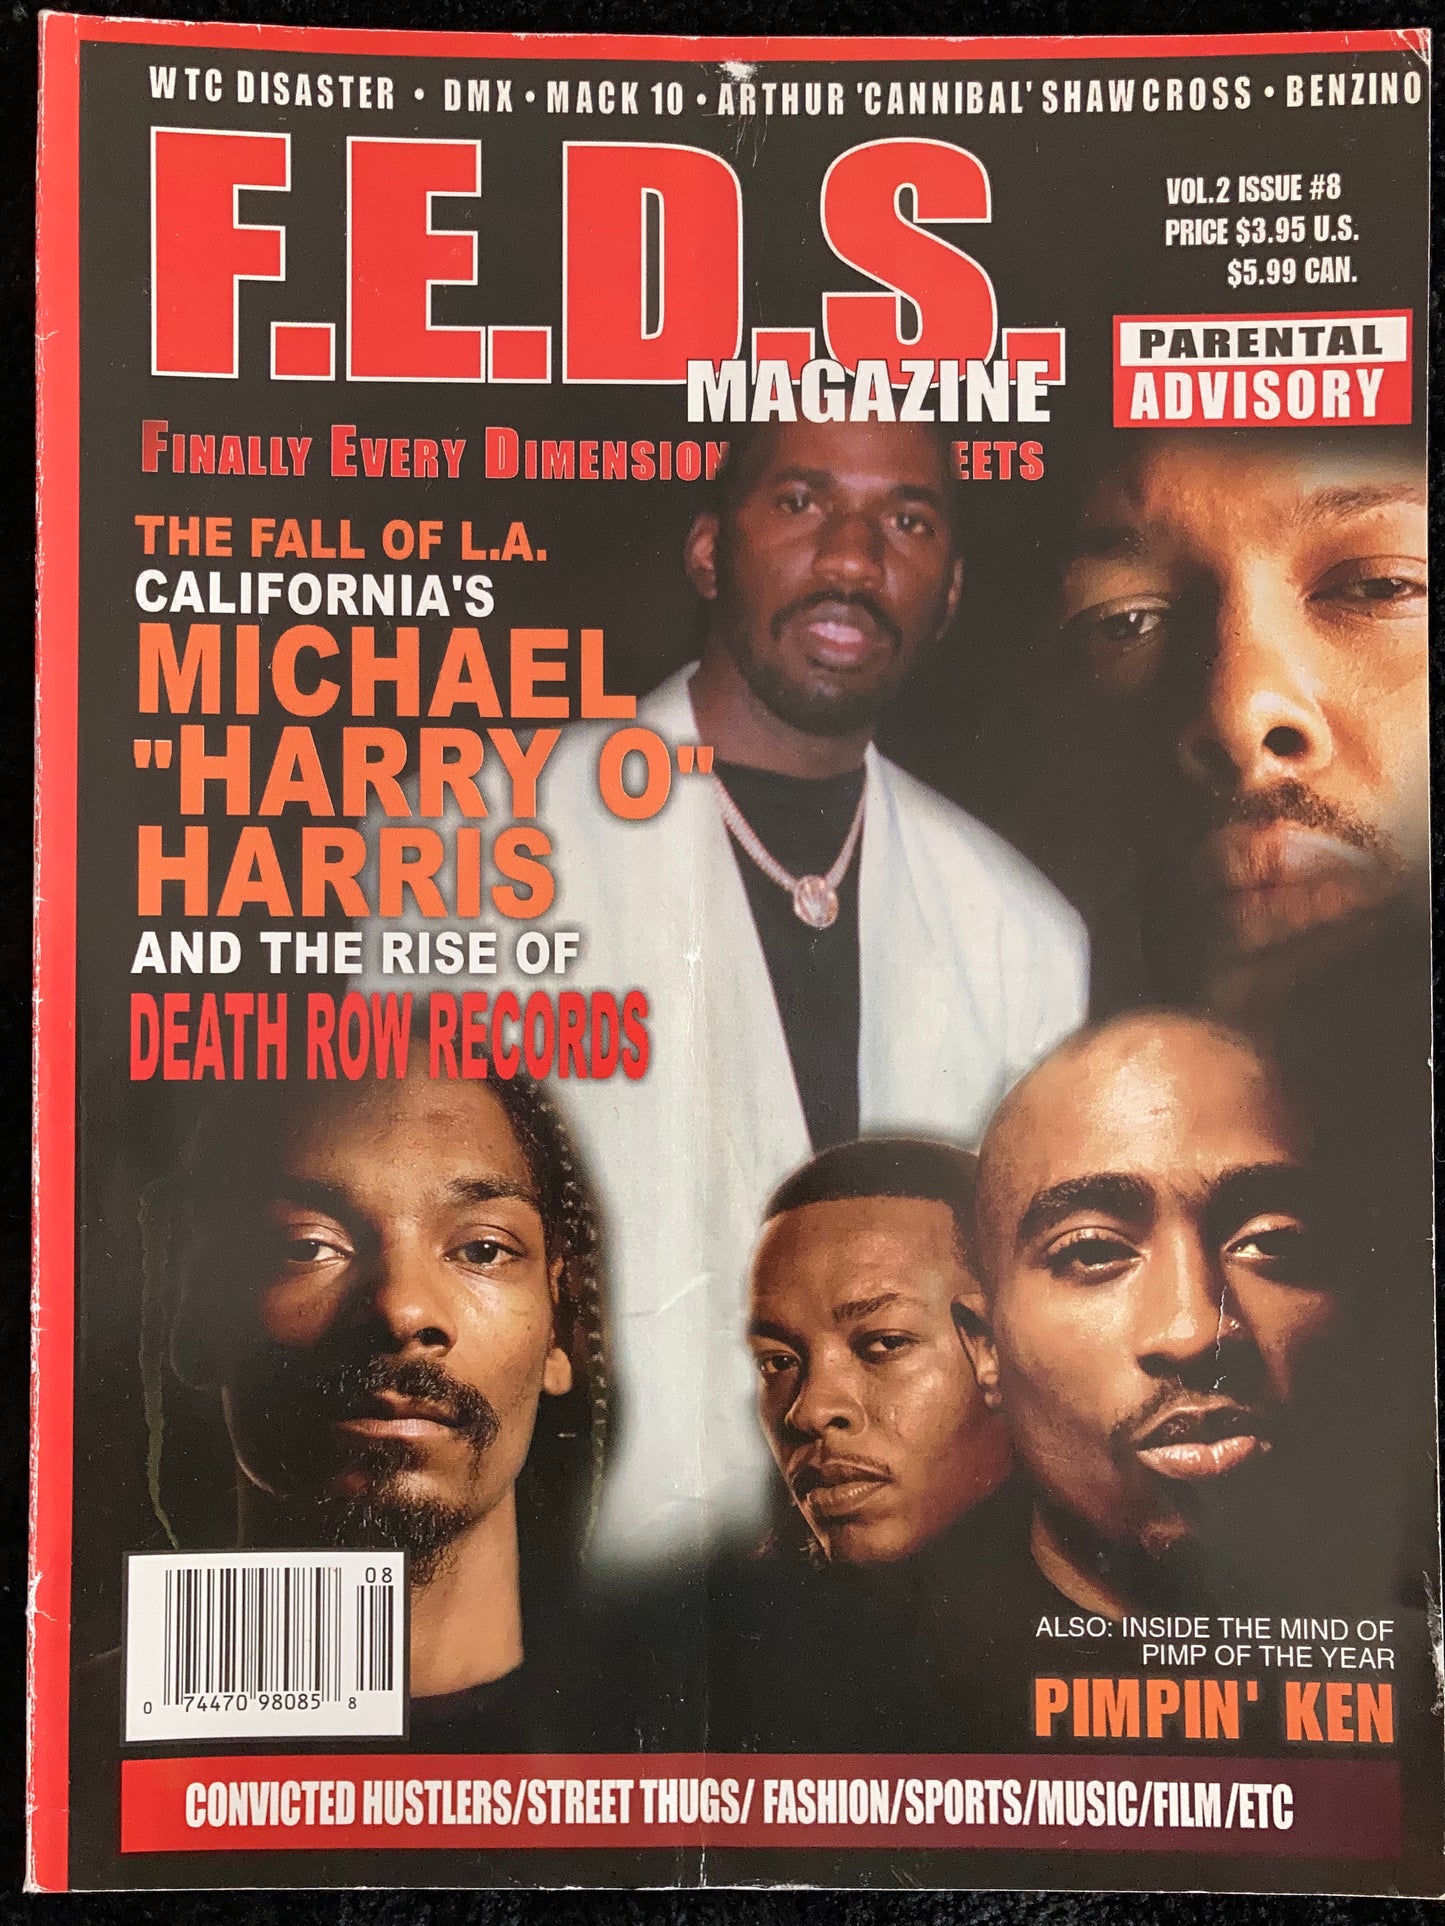 F.E.D.S. Magazine Vol. 2 Issue 8